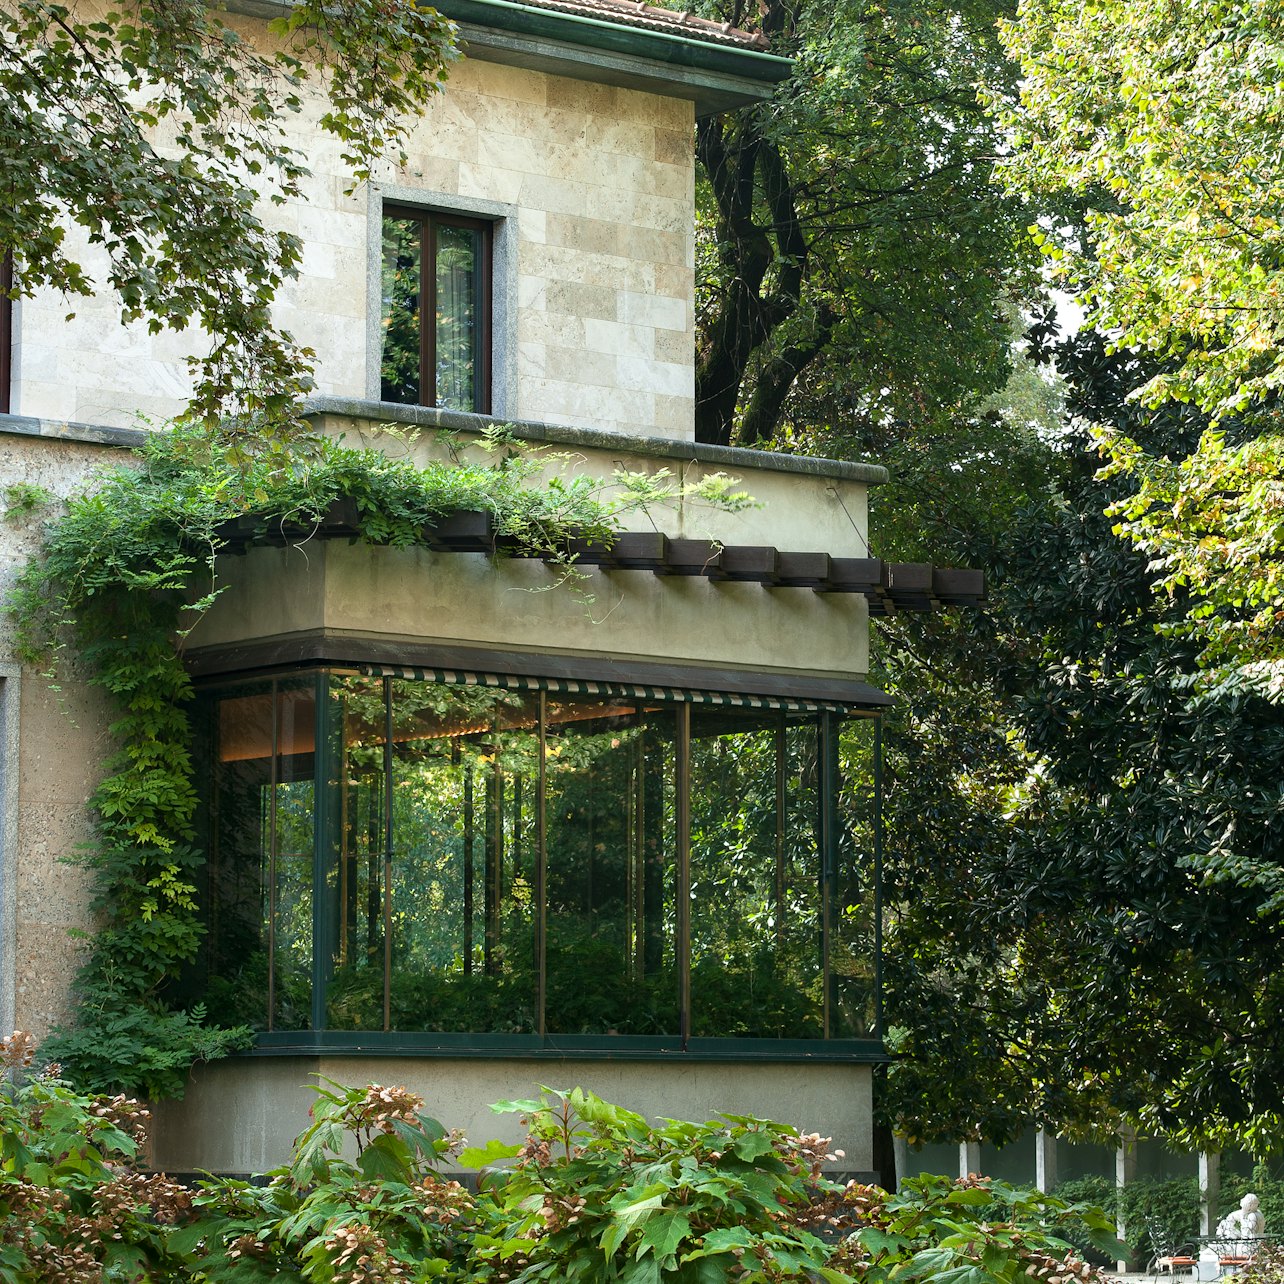 Villa Necchi Campiglio - Acomodações em Milão